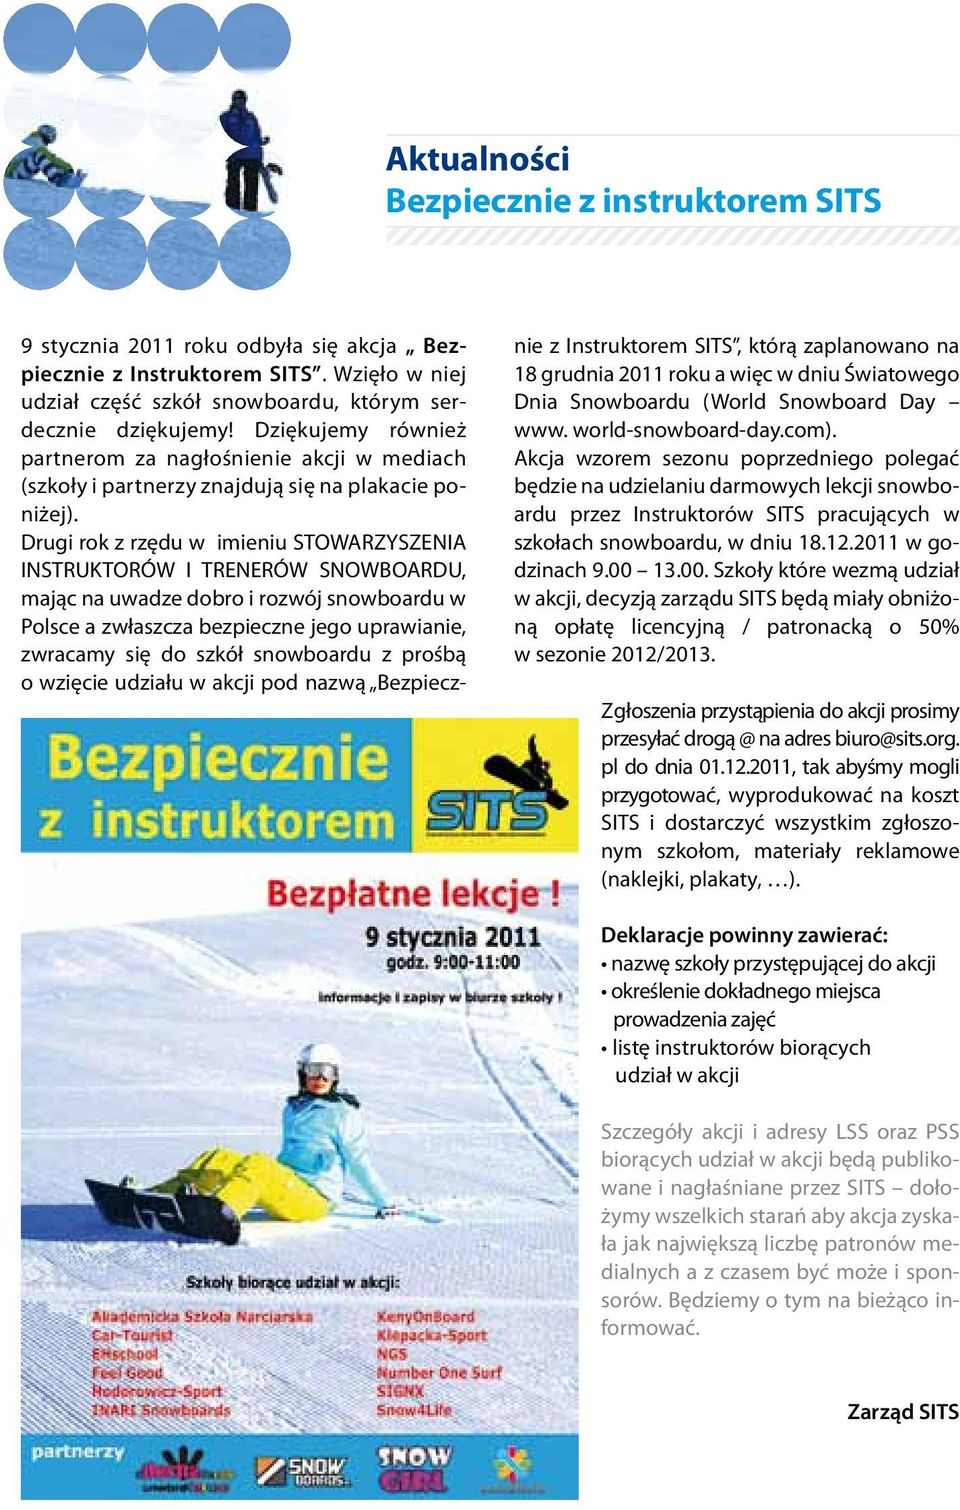 Drugi rok z rzędu w imieniu STOWARZYSZENIA INSTRUKTORÓW I TRENERÓW SNOWBOARDU, mając na uwadze dobro i rozwój snowboardu w Polsce a zwłaszcza bezpieczne jego uprawianie, zwracamy się do szkół